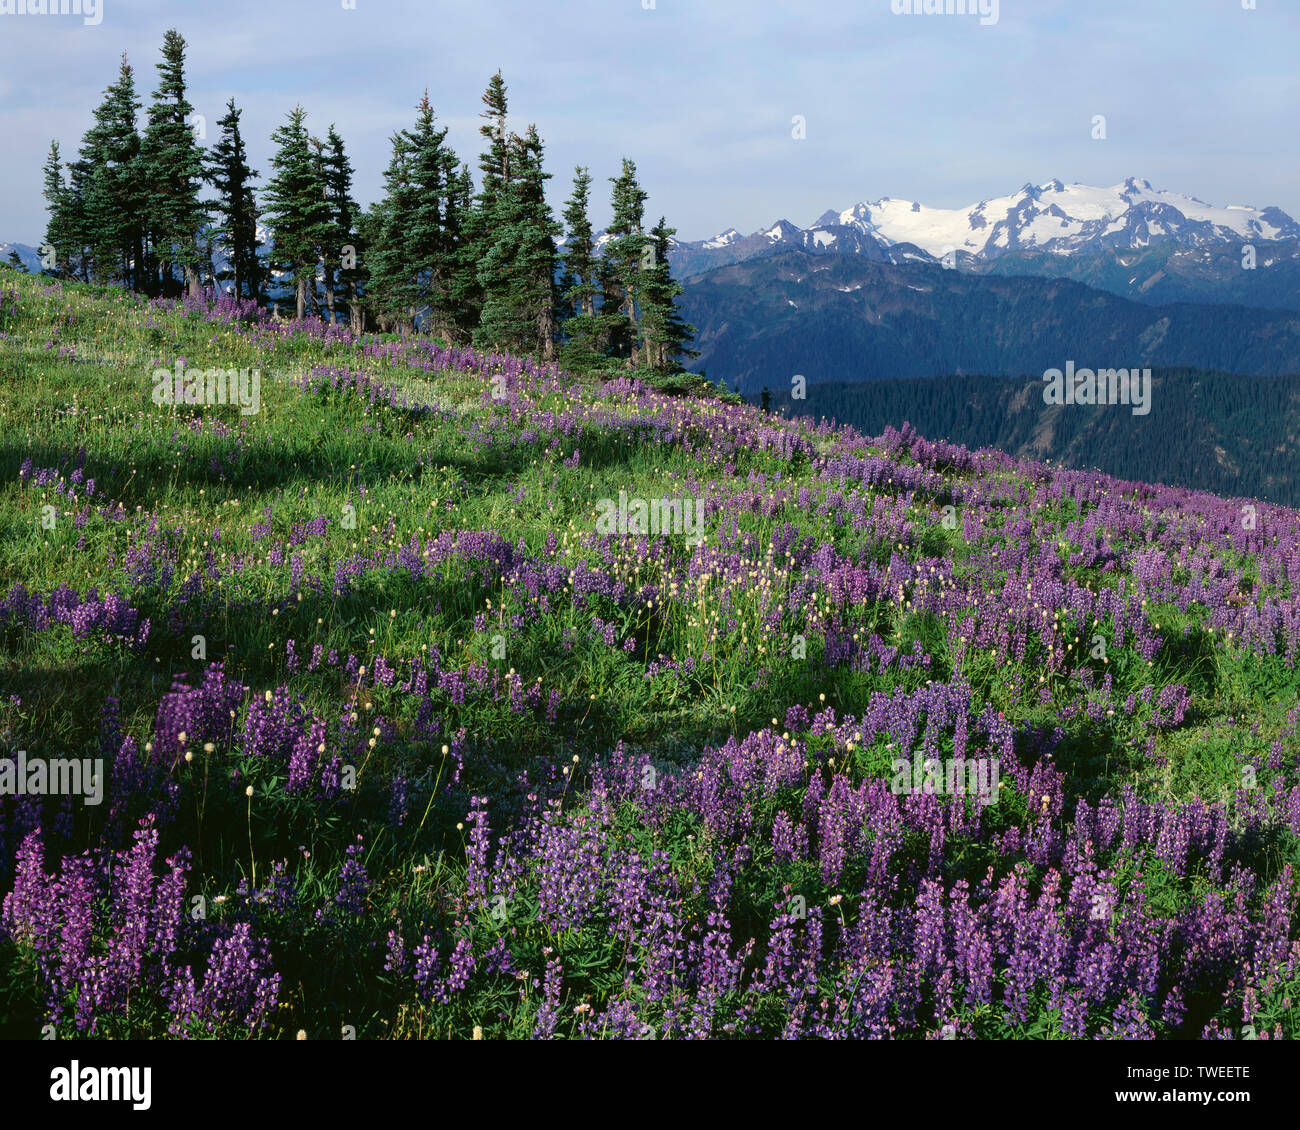 USA, Washington, Olympic National Park, Wiese in der Bekämpfung von breitblättrigen Lupin und zerstreut in der Nähe von bistort Hindernis Peak und entfernten Mt. Olymp. Stockfoto